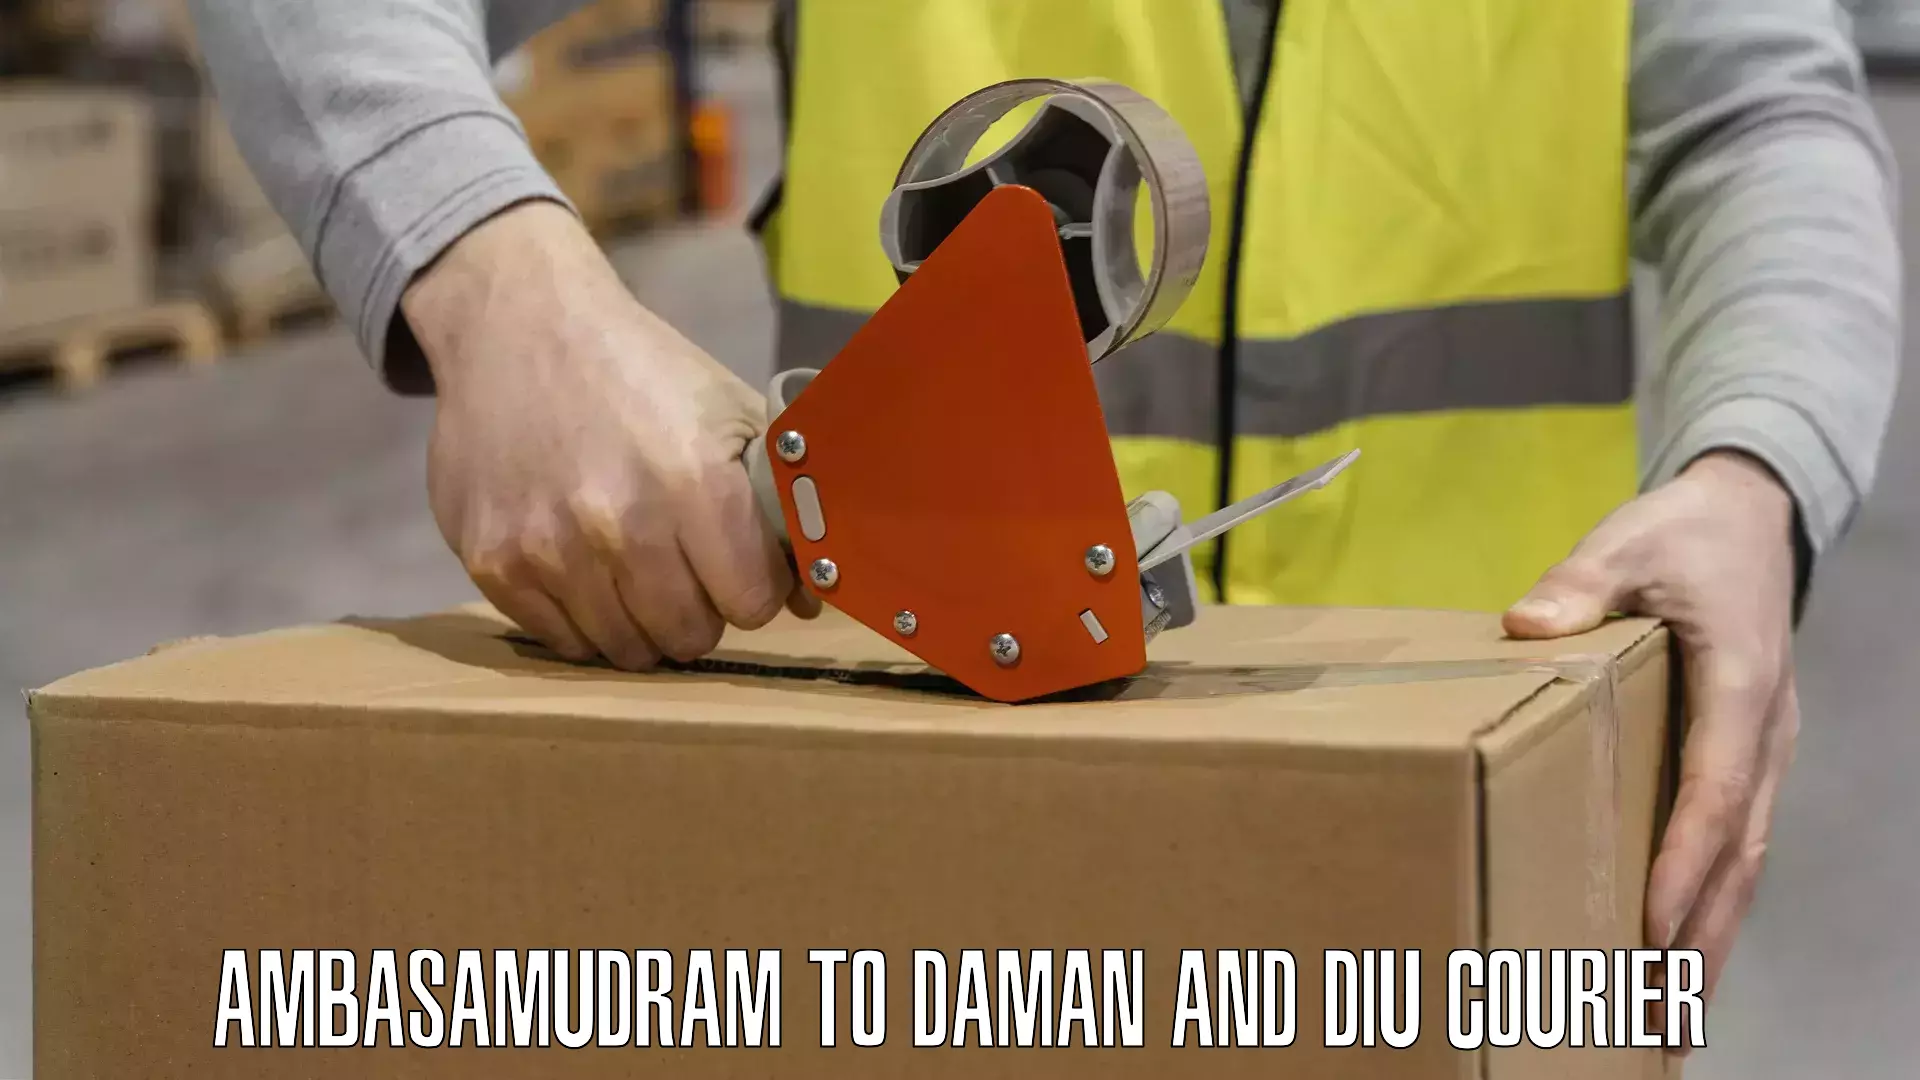 Multi-package shipping Ambasamudram to Daman and Diu